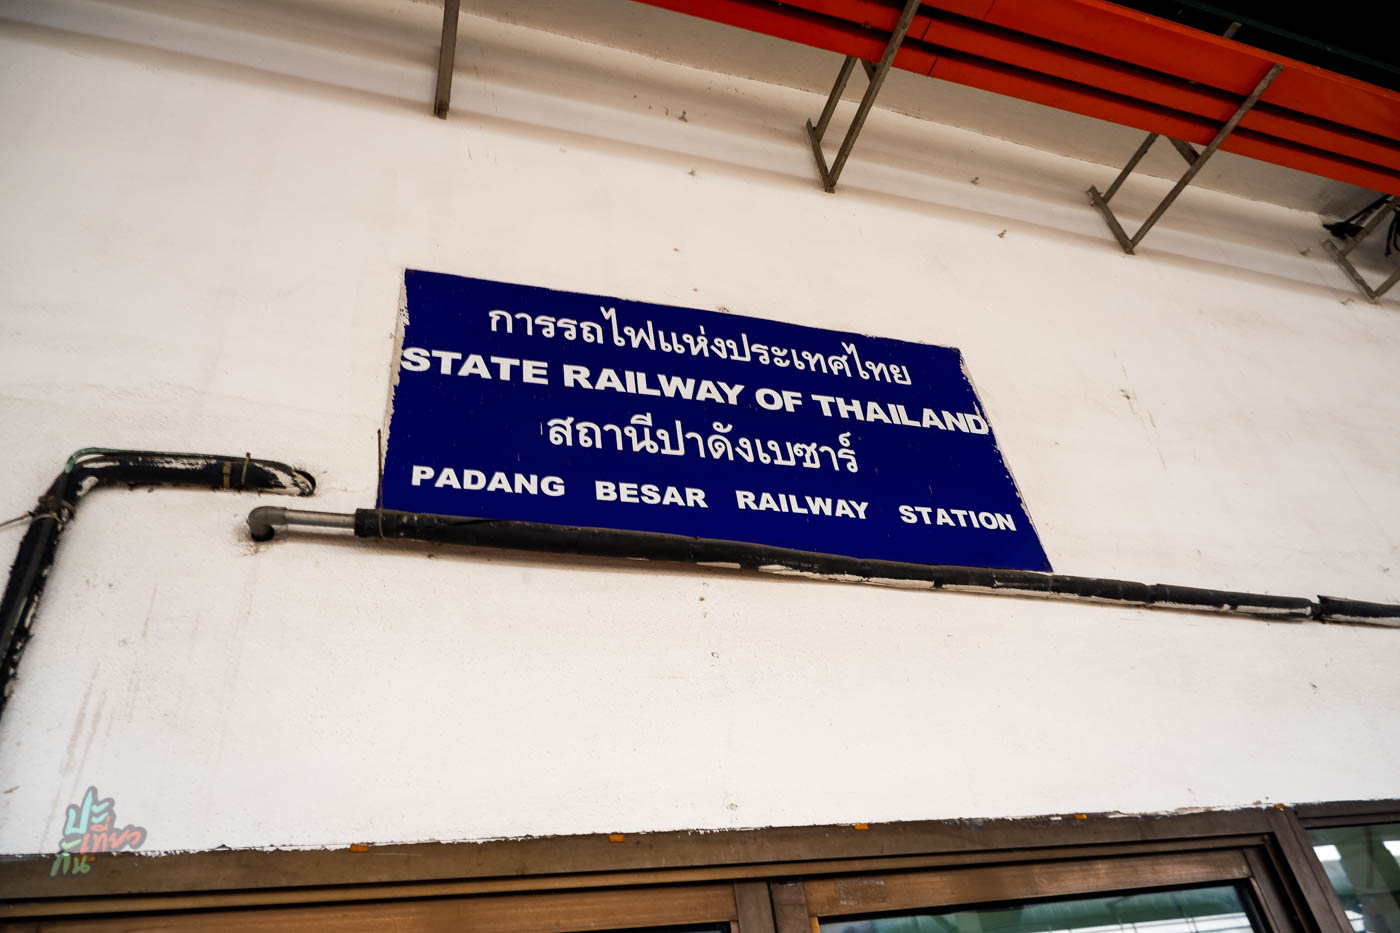 ป้ายการรถไฟแห่งประเทศไทย ที่ปาดังเบซาร์